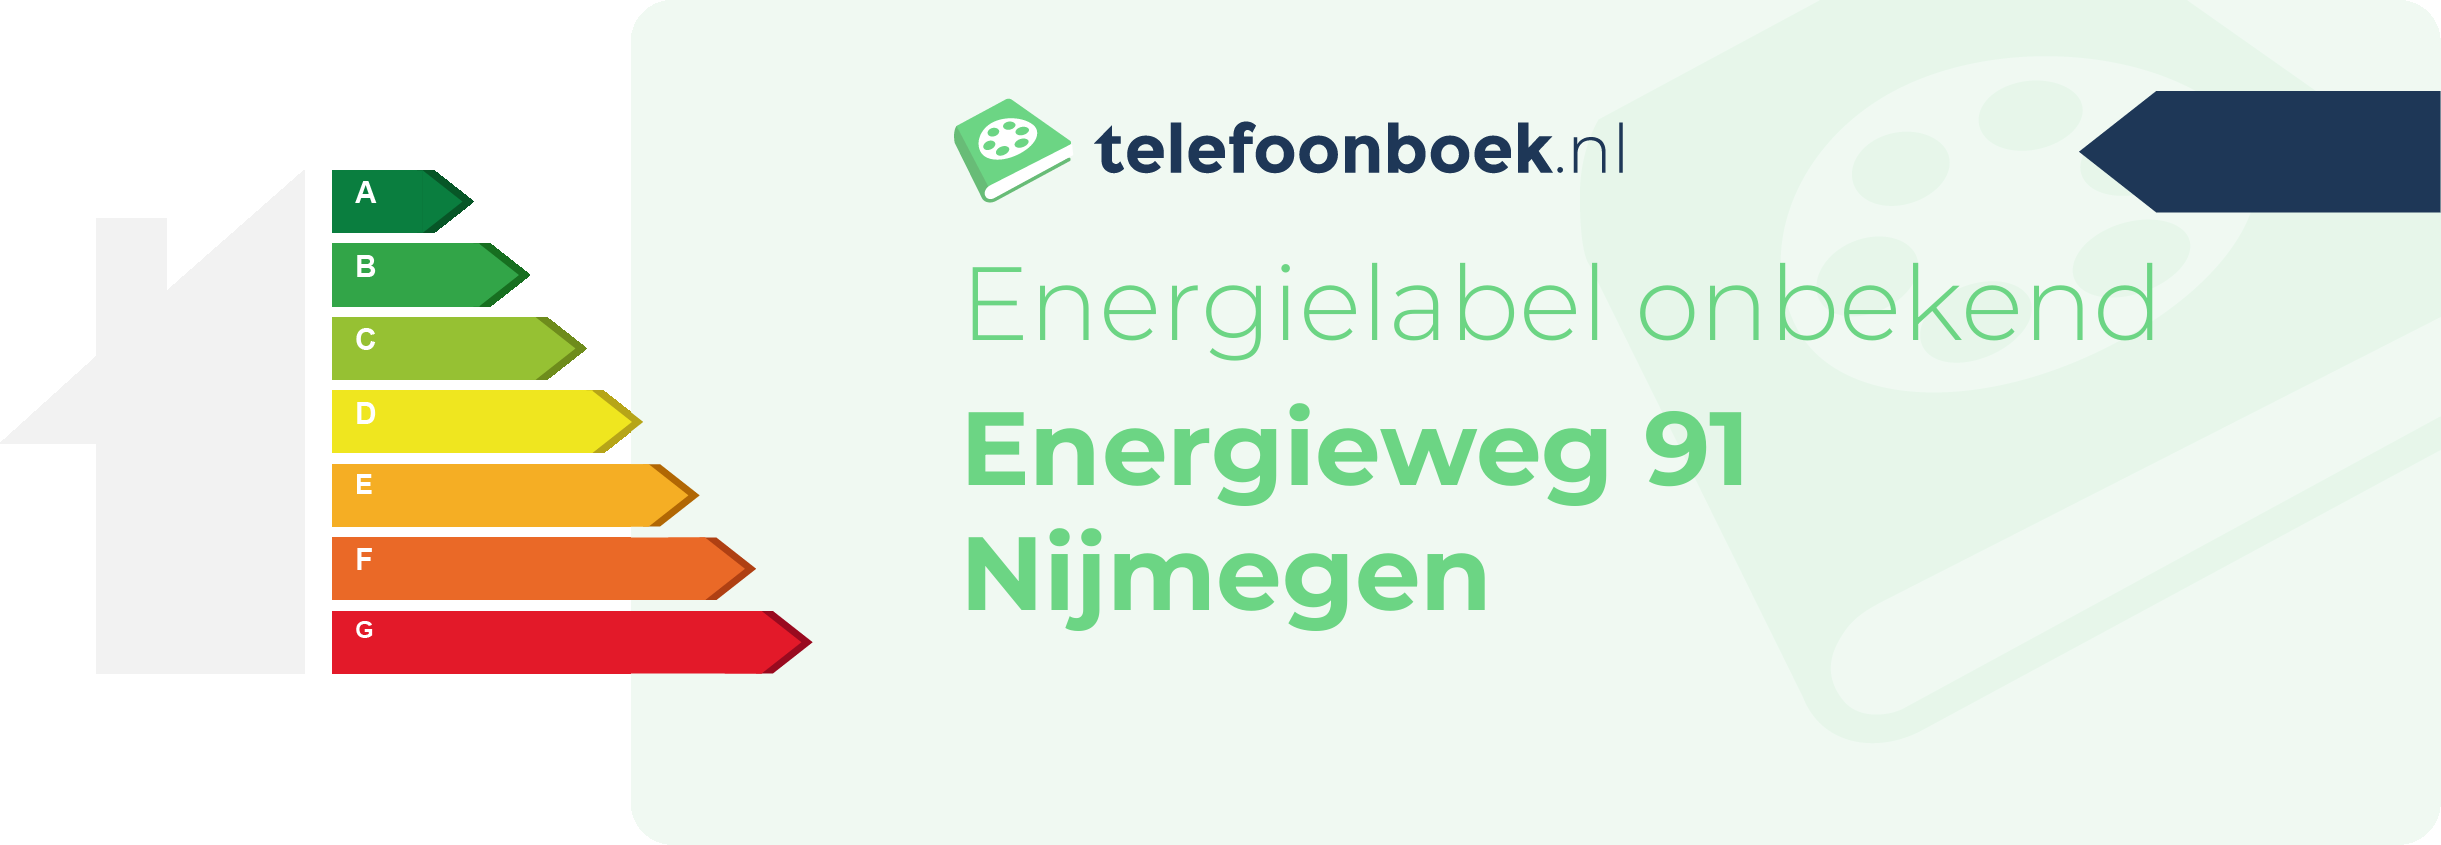 Energielabel Energieweg 91 Nijmegen